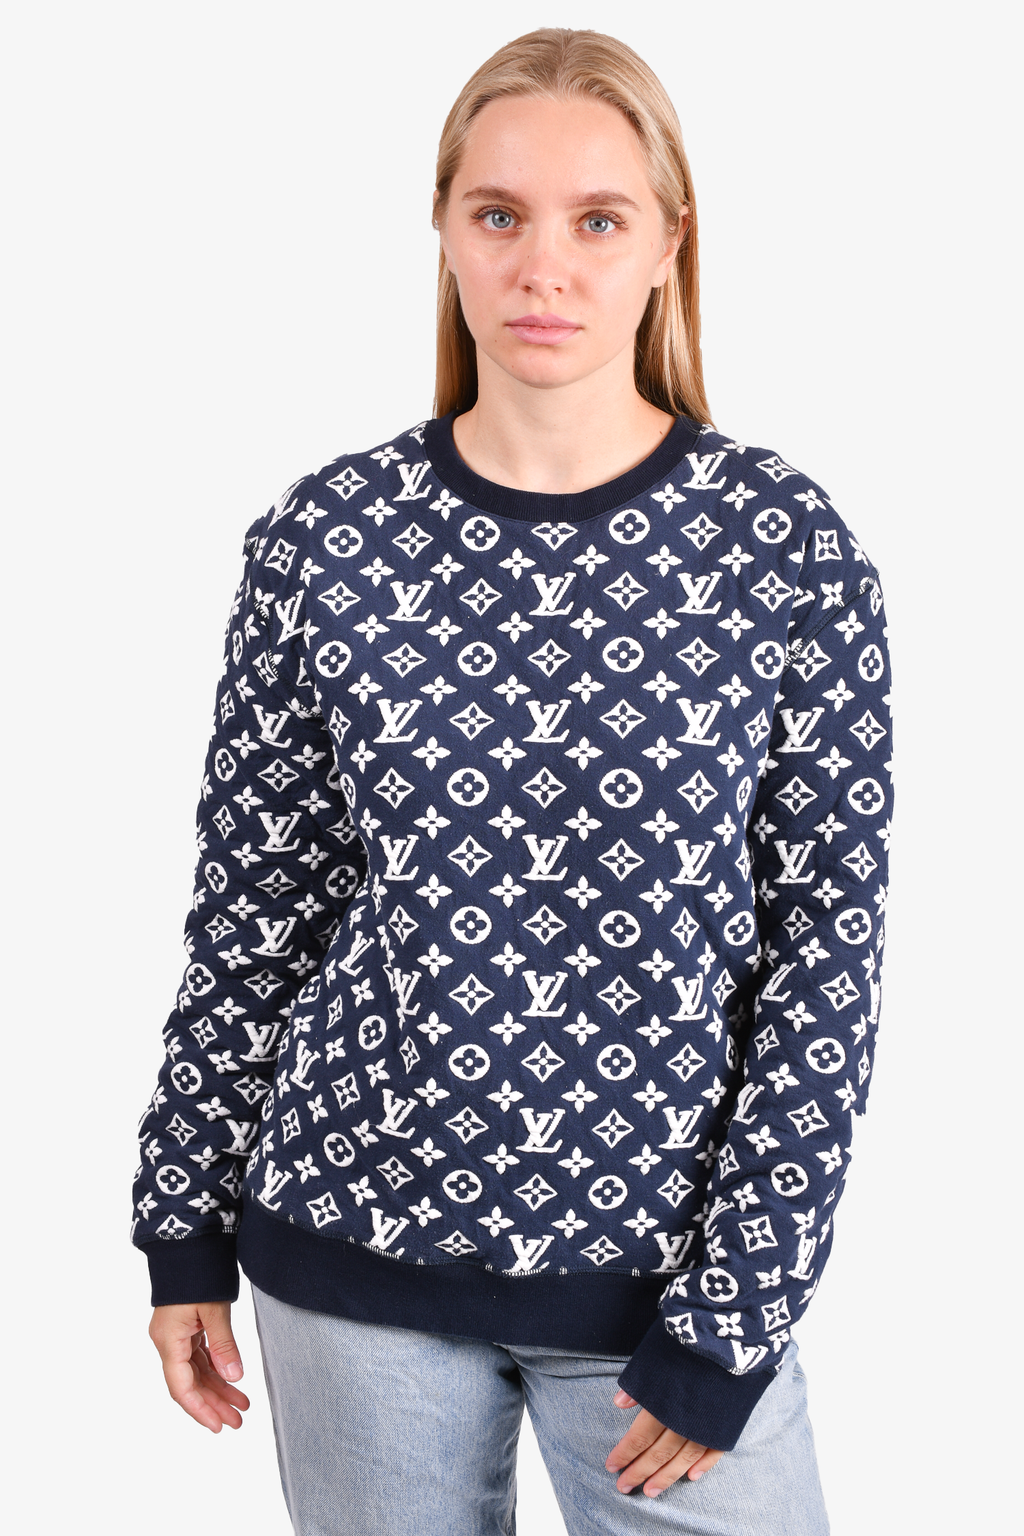 Louis Vuitton Sweatshirt Women